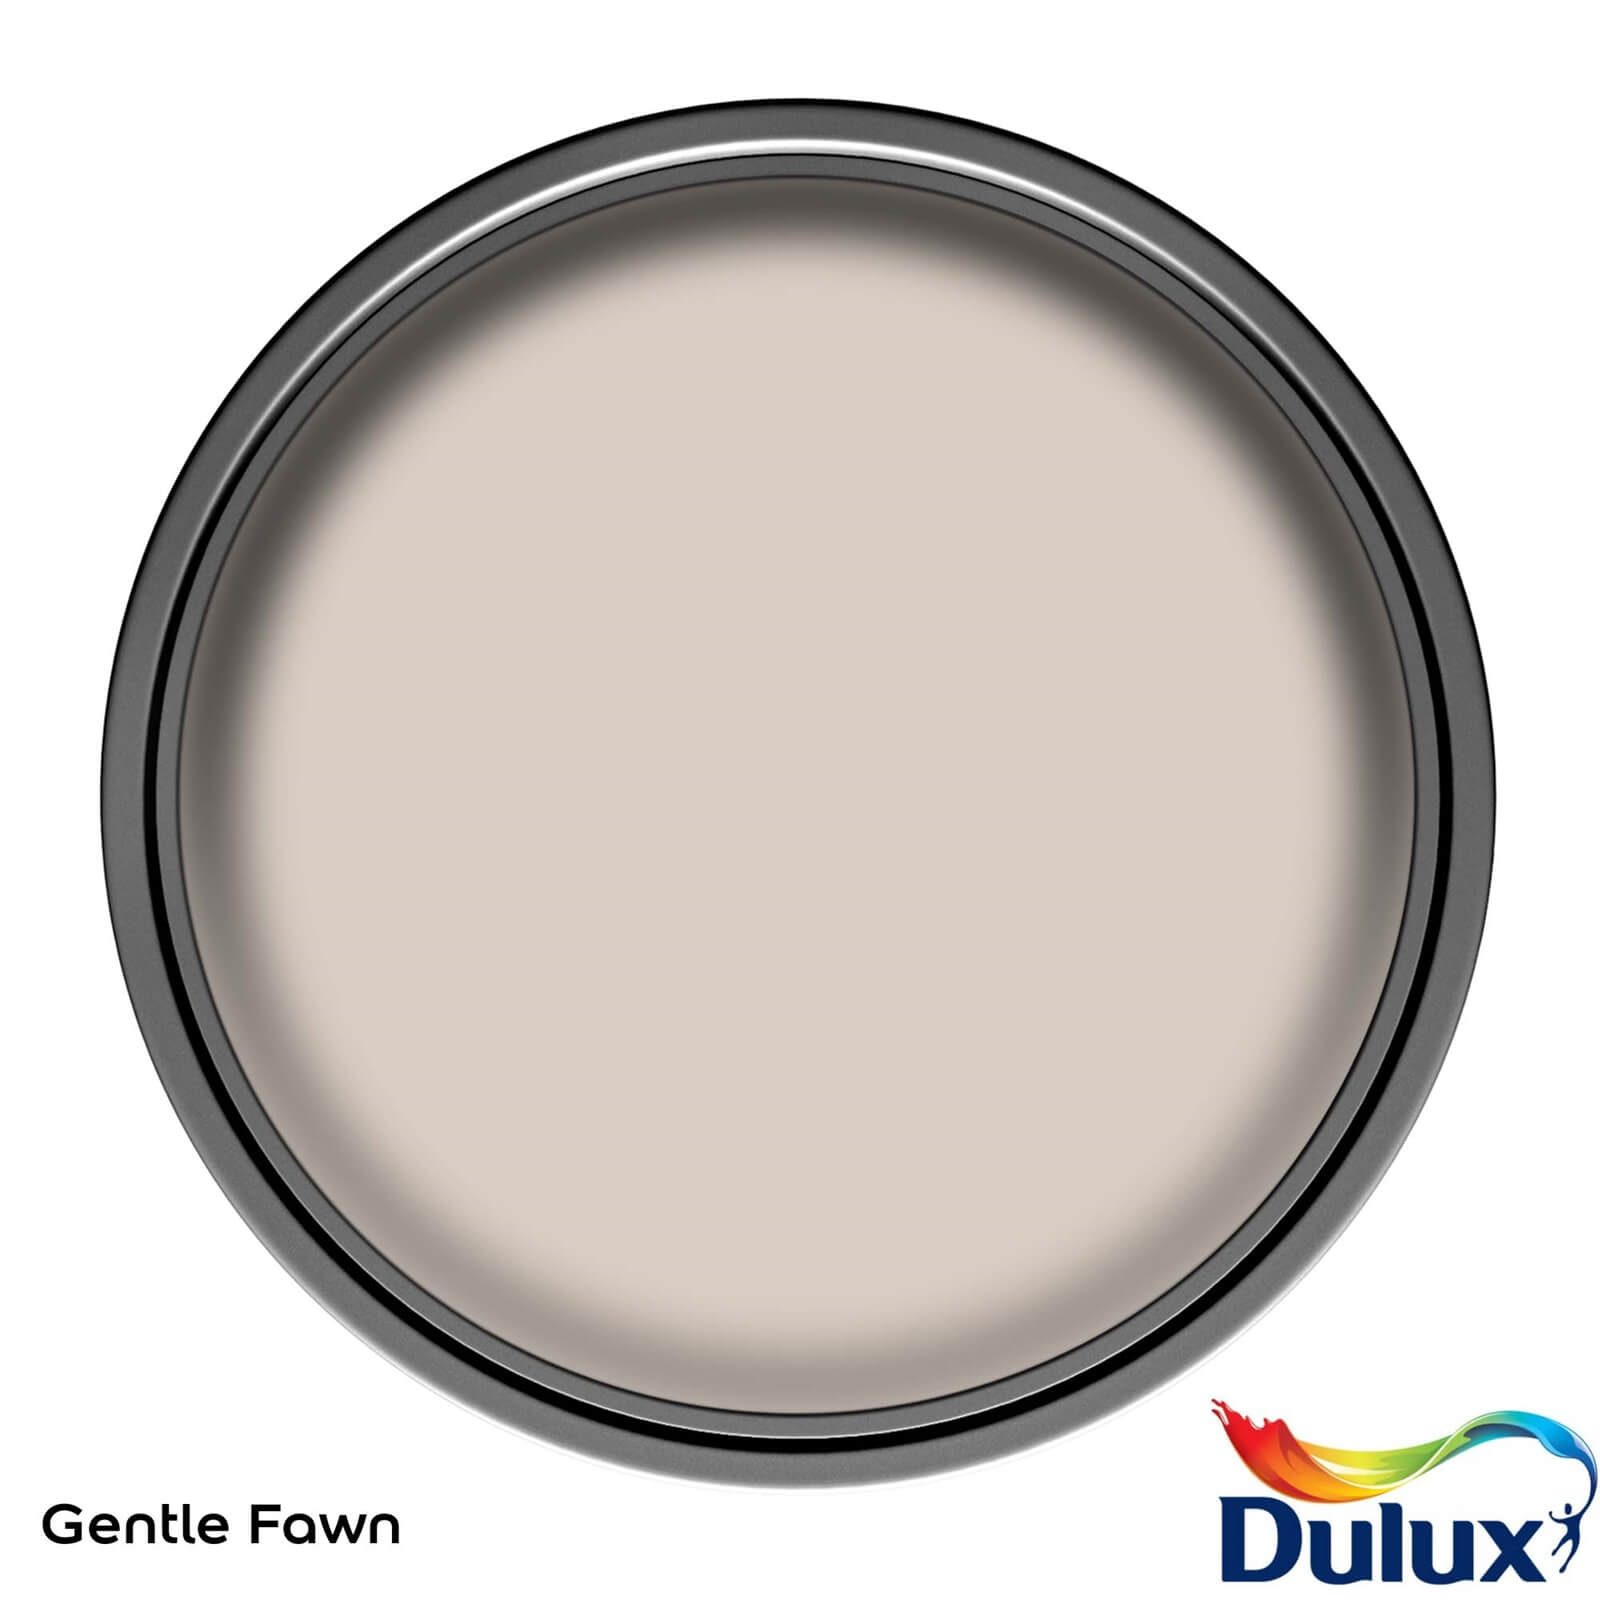 Dulux Easycare Washable & Tough Matt Paint Gentle Fawn - 2.5L